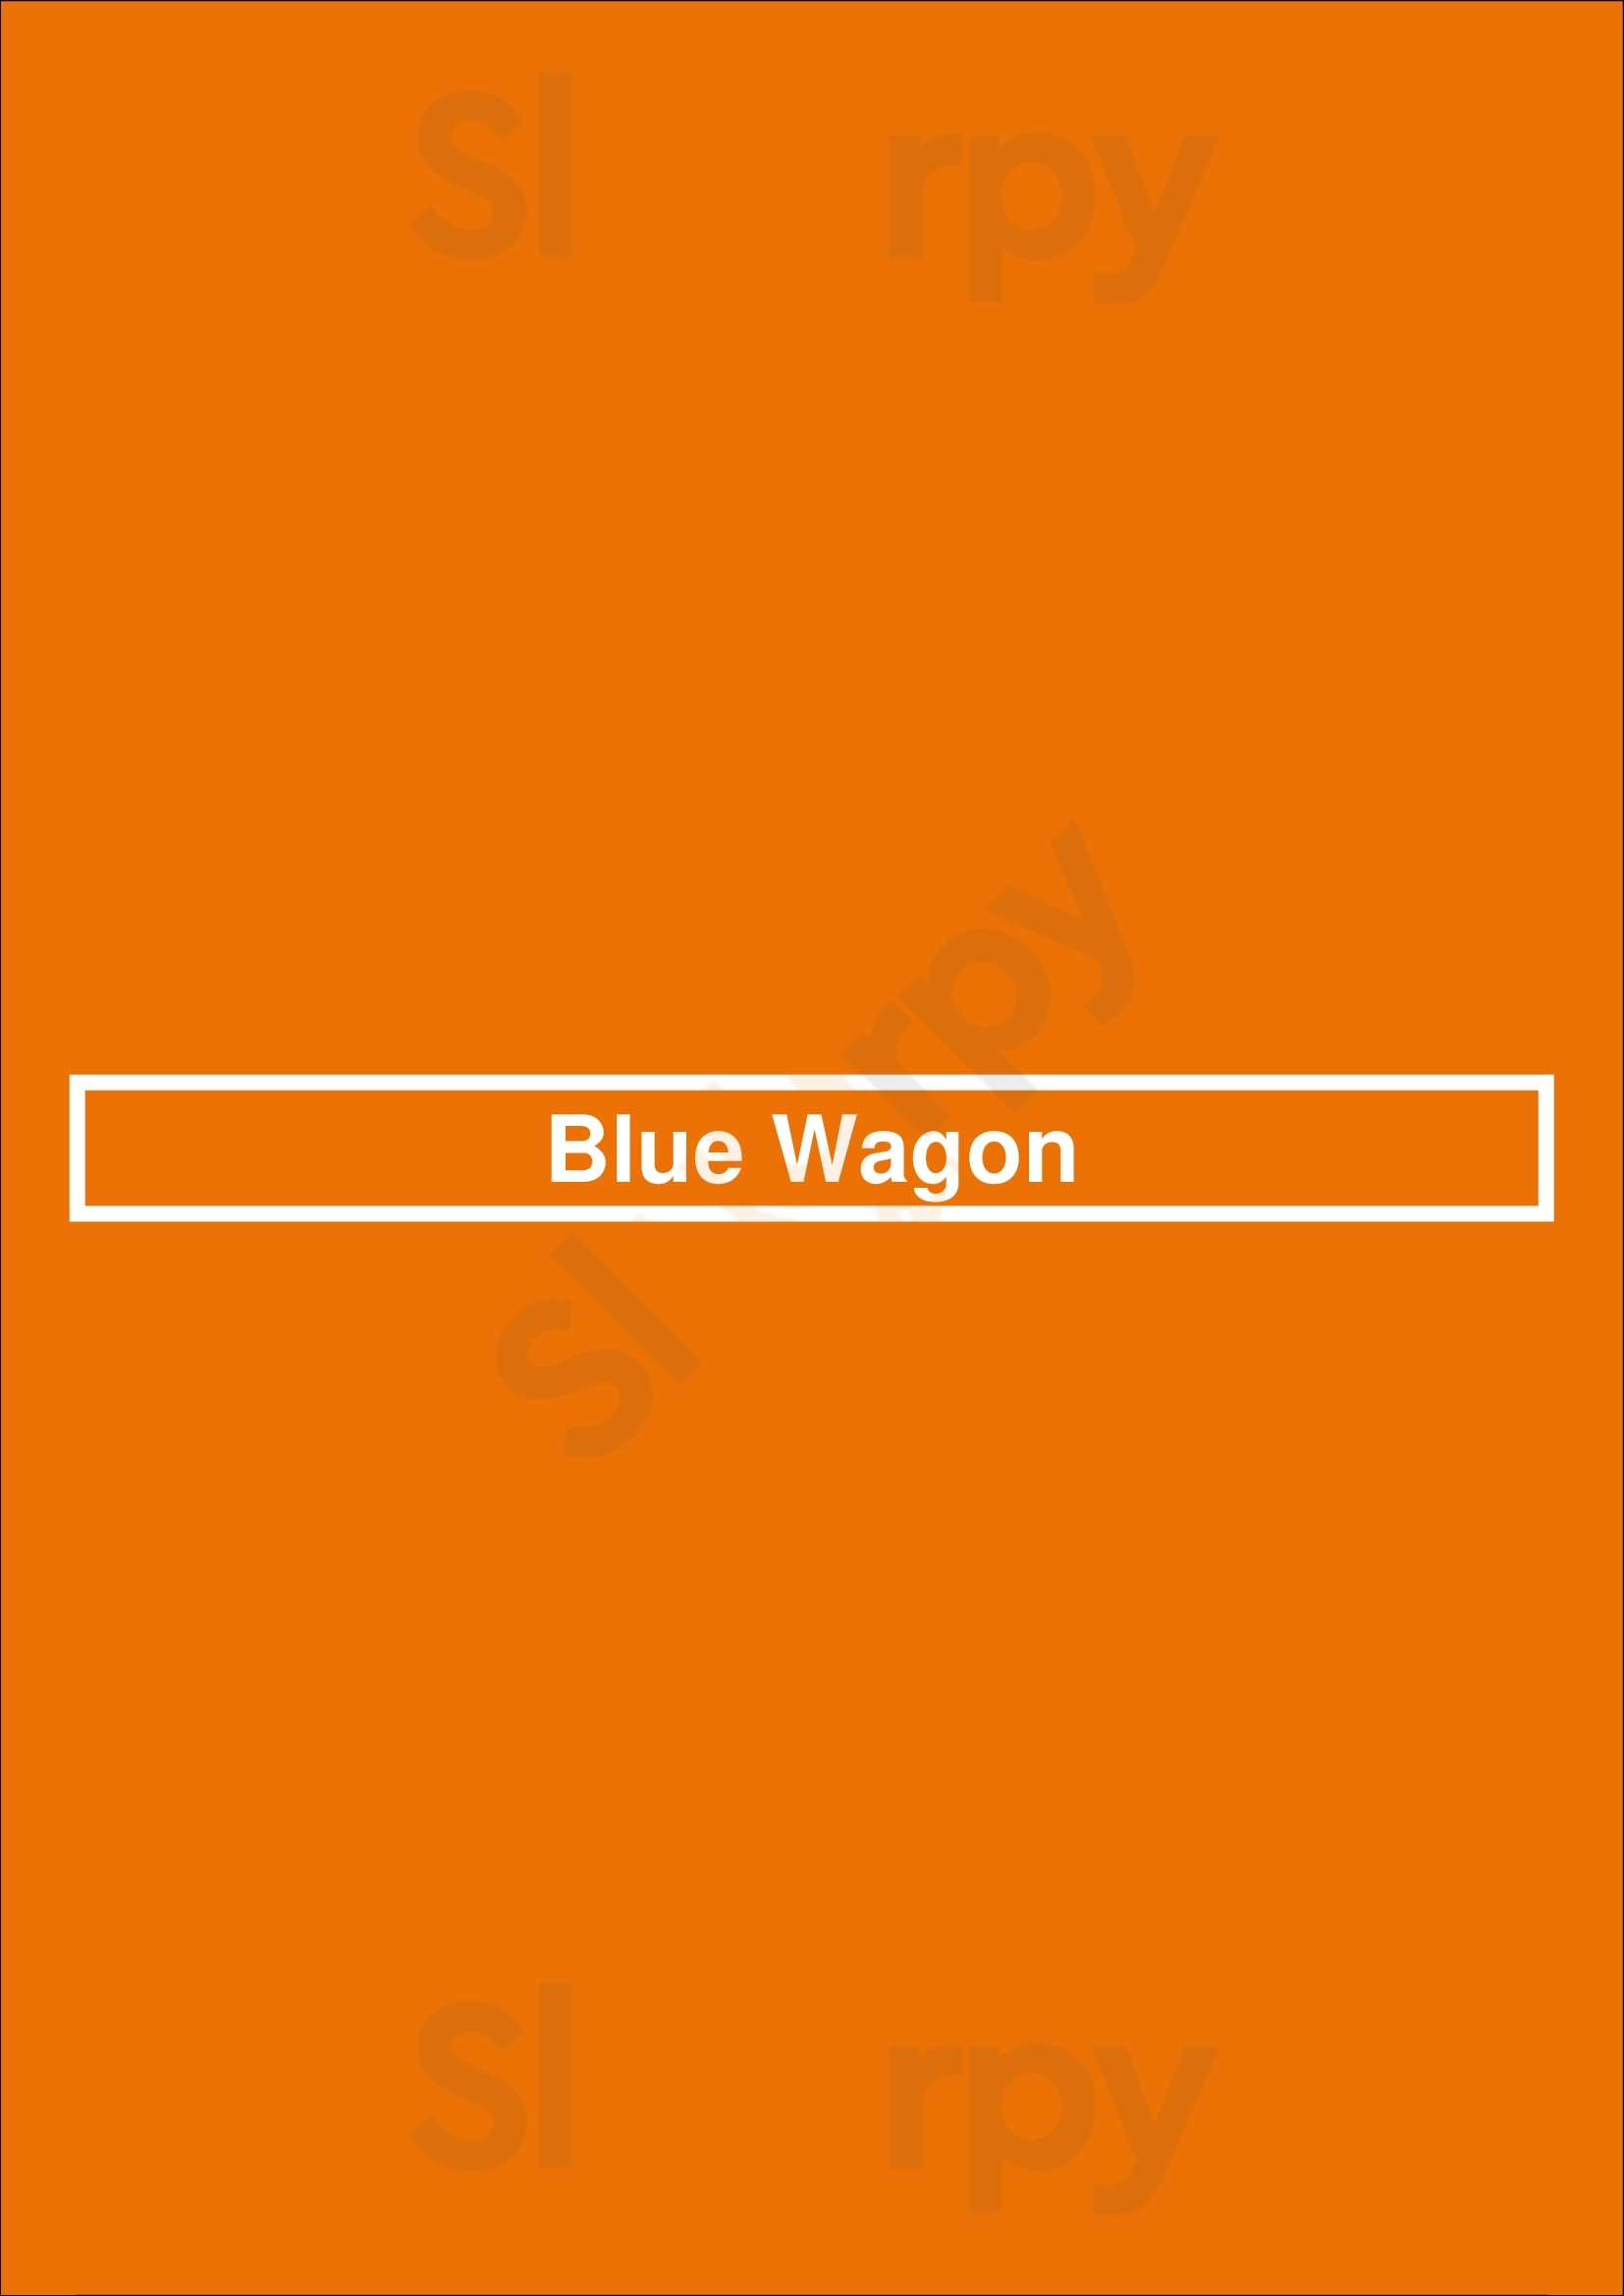 Blue Wagon Praha Menu - 1